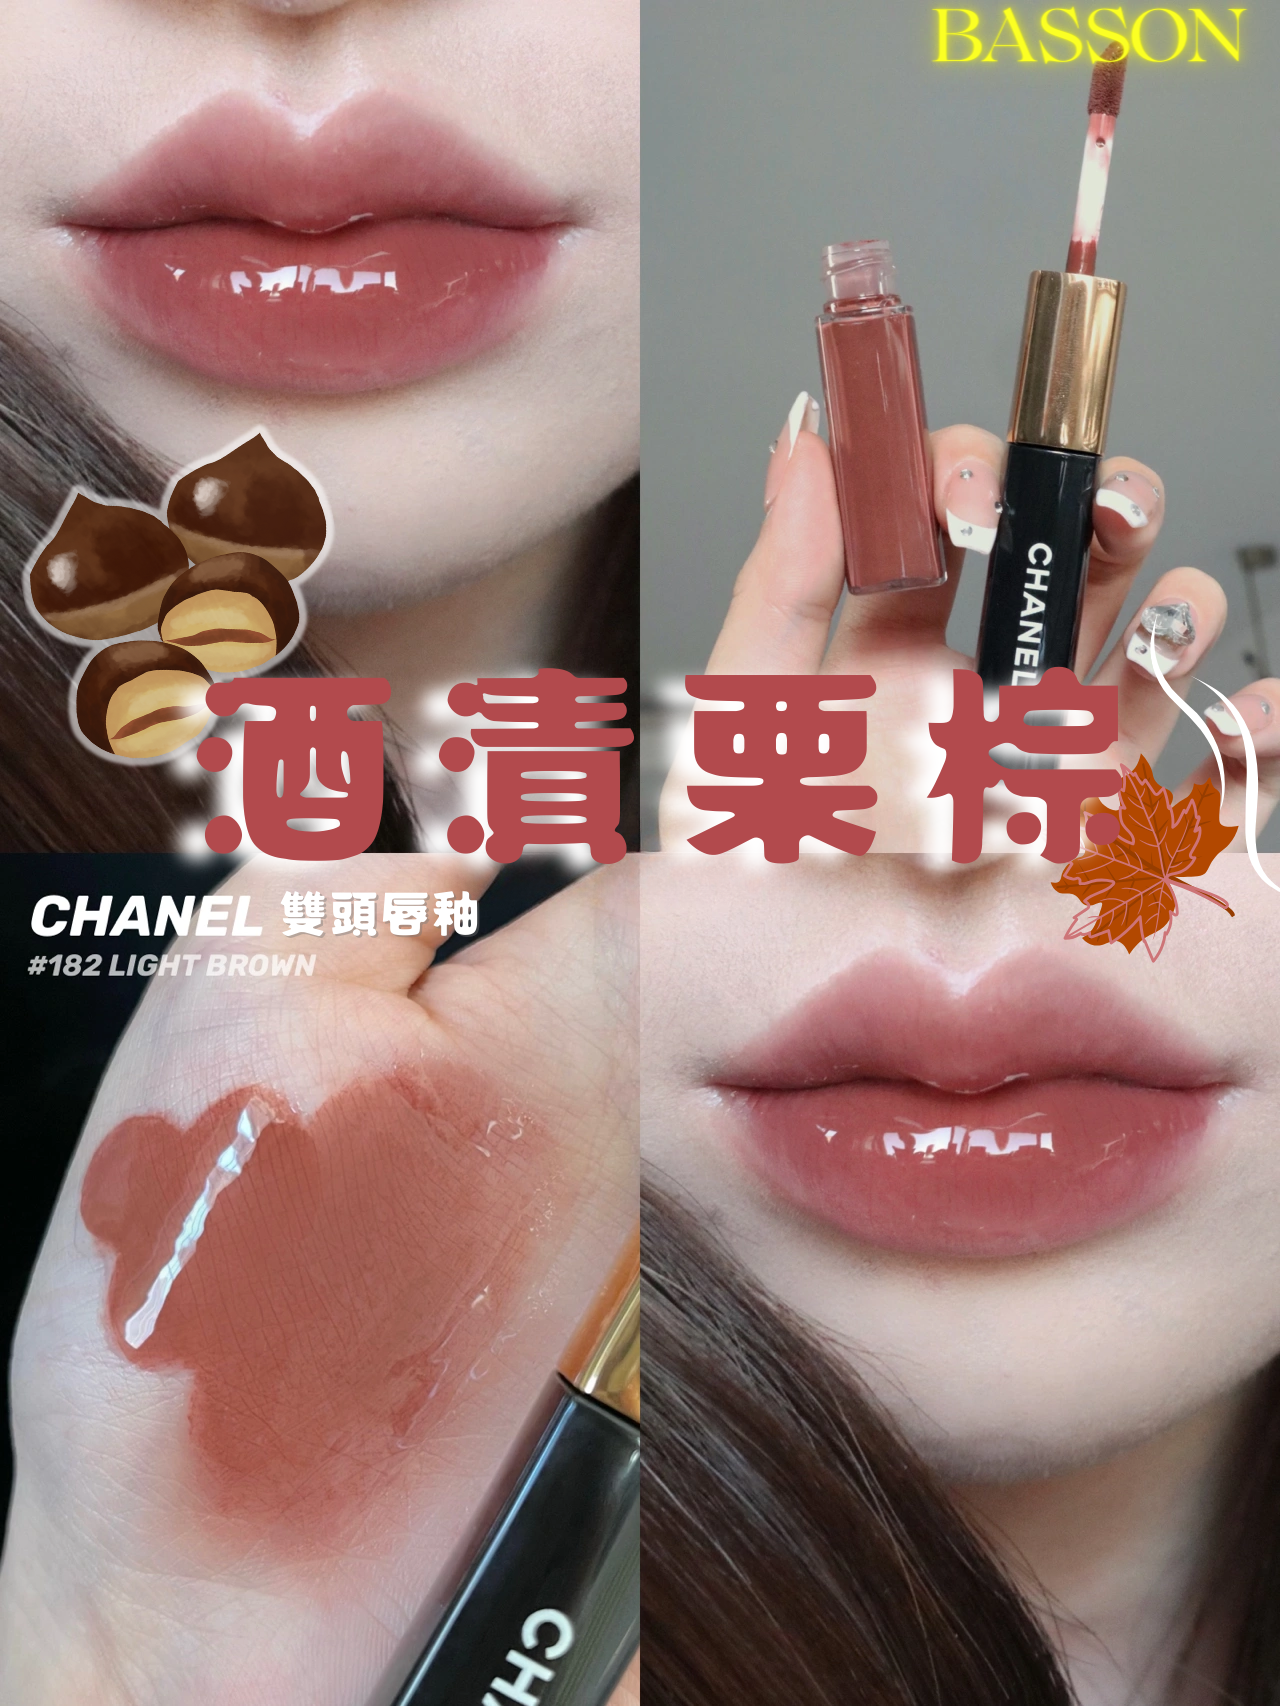 Chanel Light Brown (182) Le Rouge Duo Ultra Tenue Ultrawear Liquid